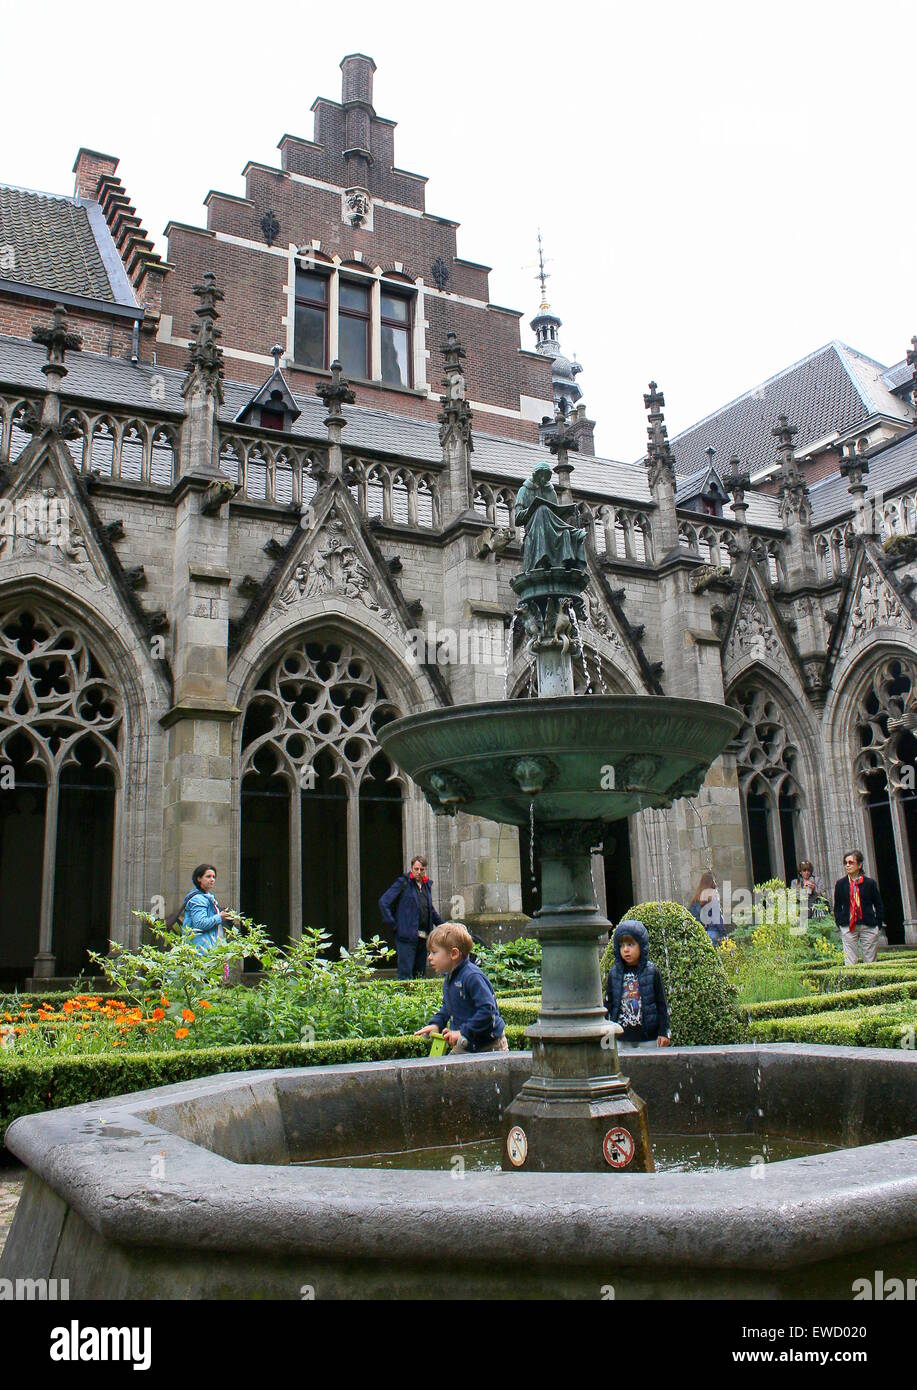 Cortile interno (Pandhof) di gotica Chiesa del Duomo o San Martin's Cathedral, Utrecht, Paesi Bassi. La fontana e la statua di Hugo Wstinc Foto Stock